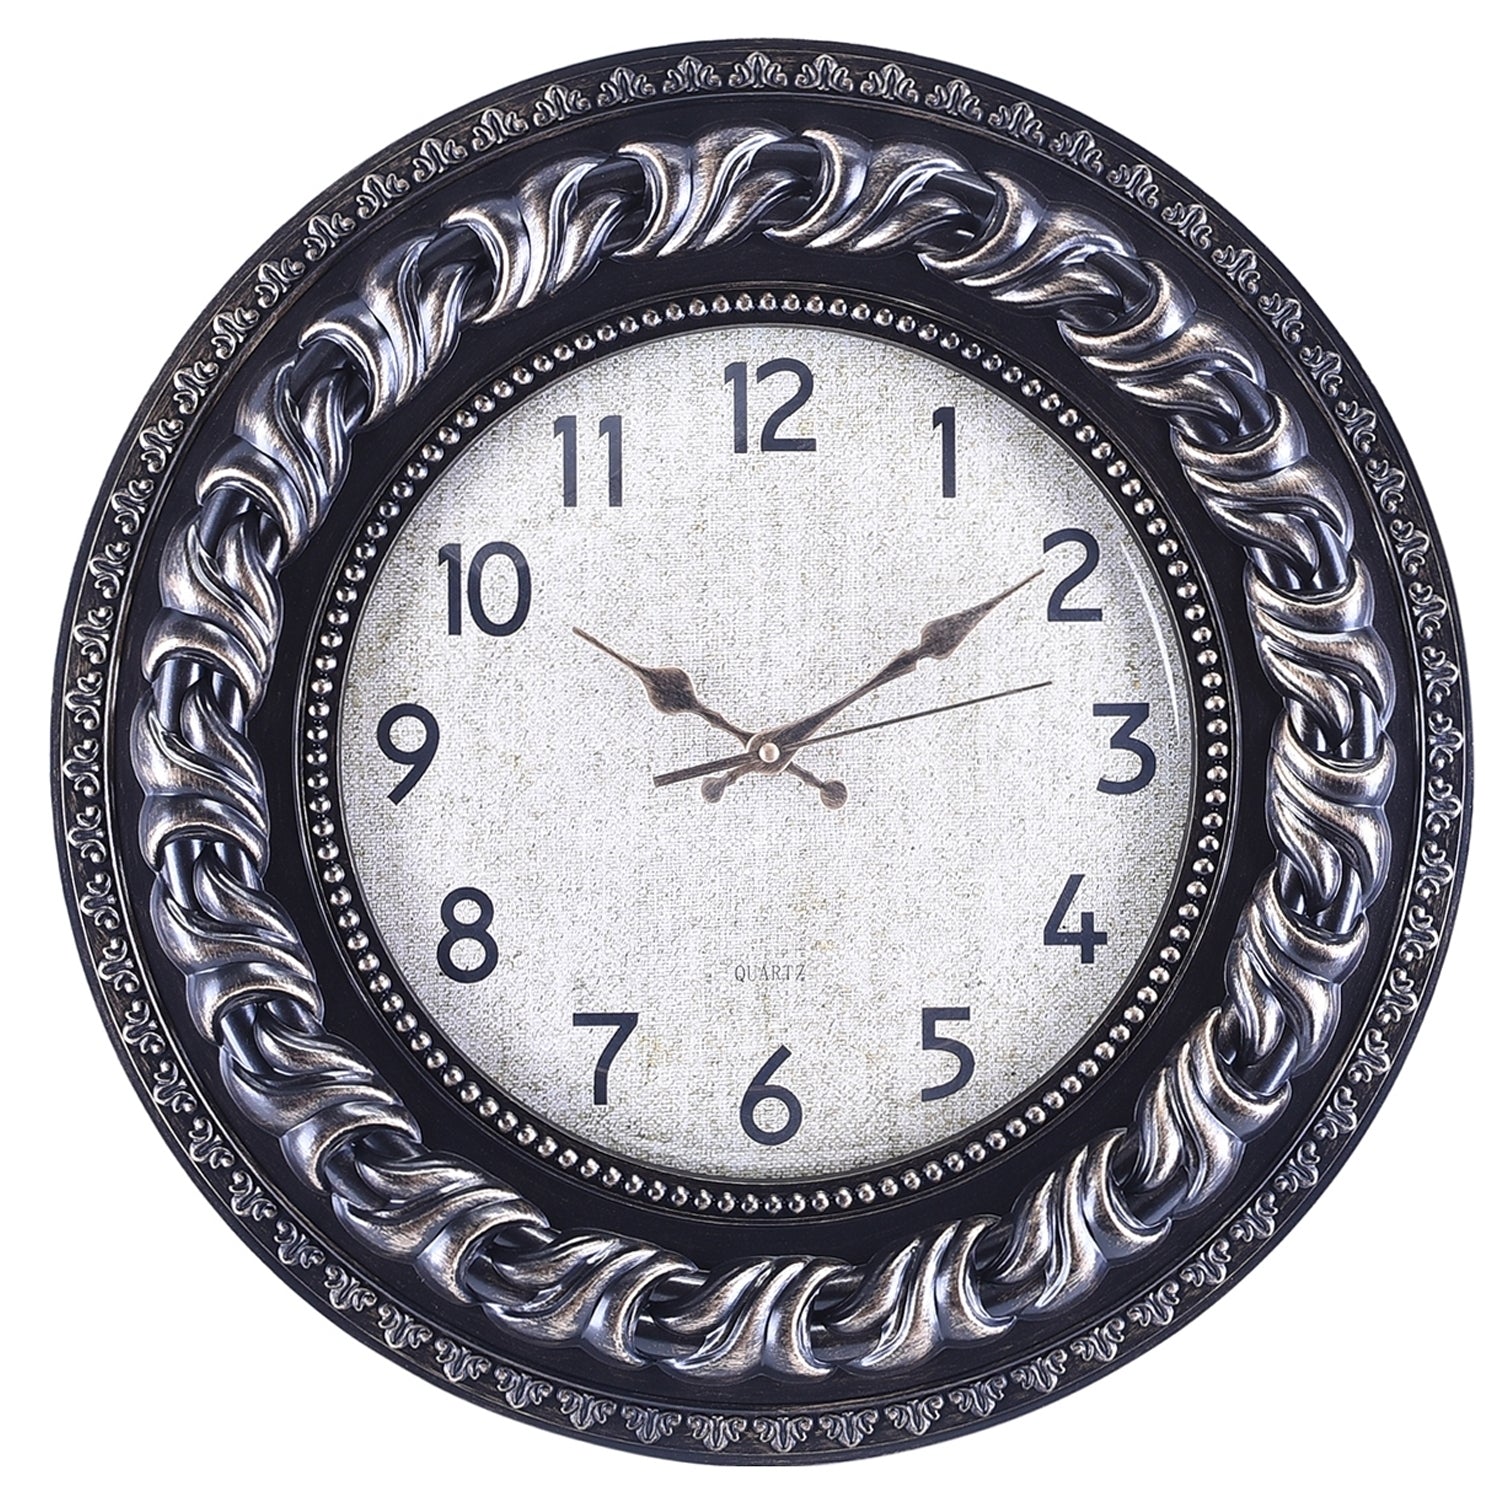 Premium Antique Design Analog Wall Clock 32